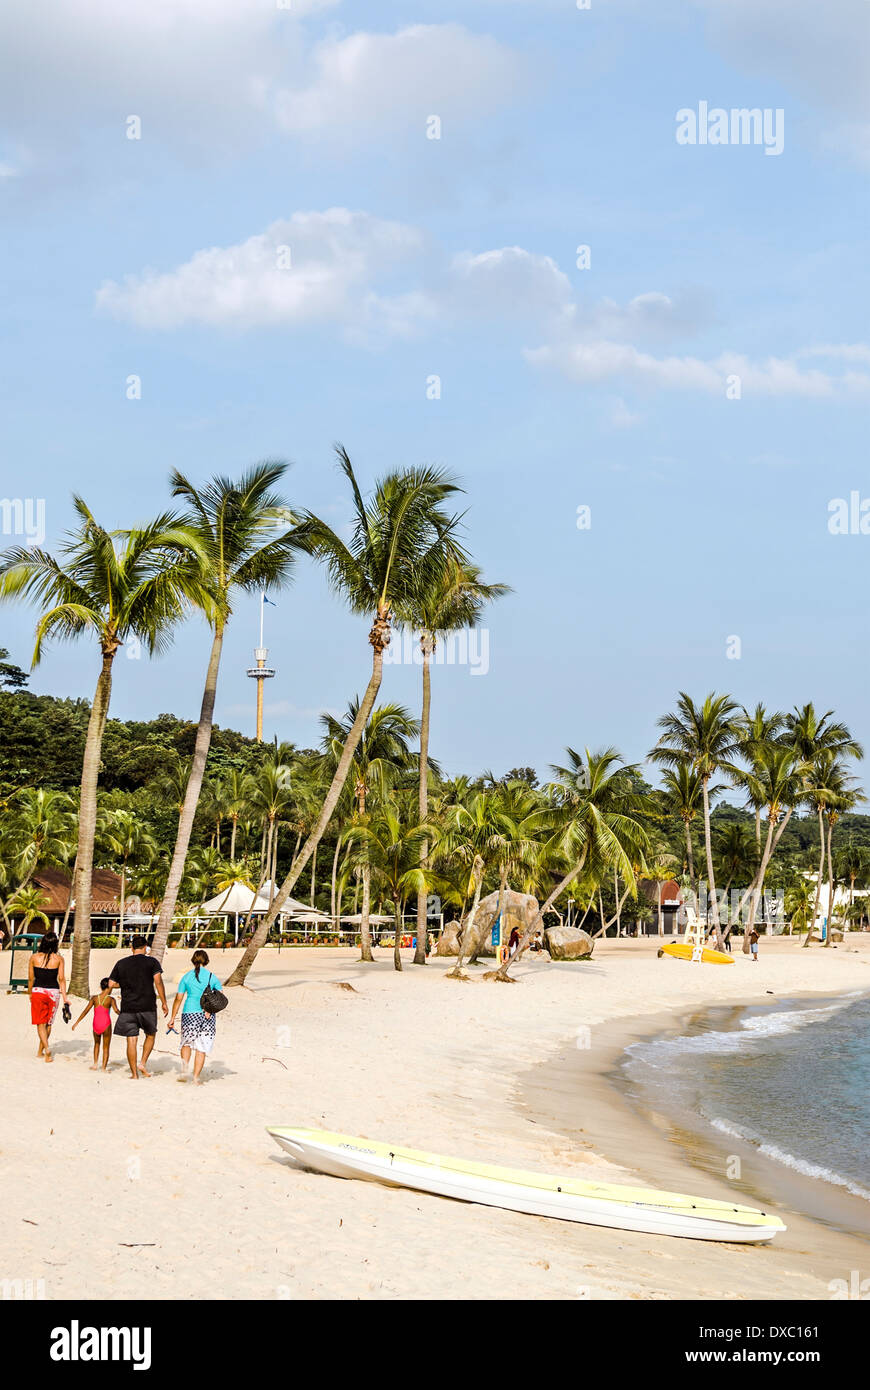 La plage de Siloso pittoresque sur l'île de Sentosa, Singapour Banque D'Images